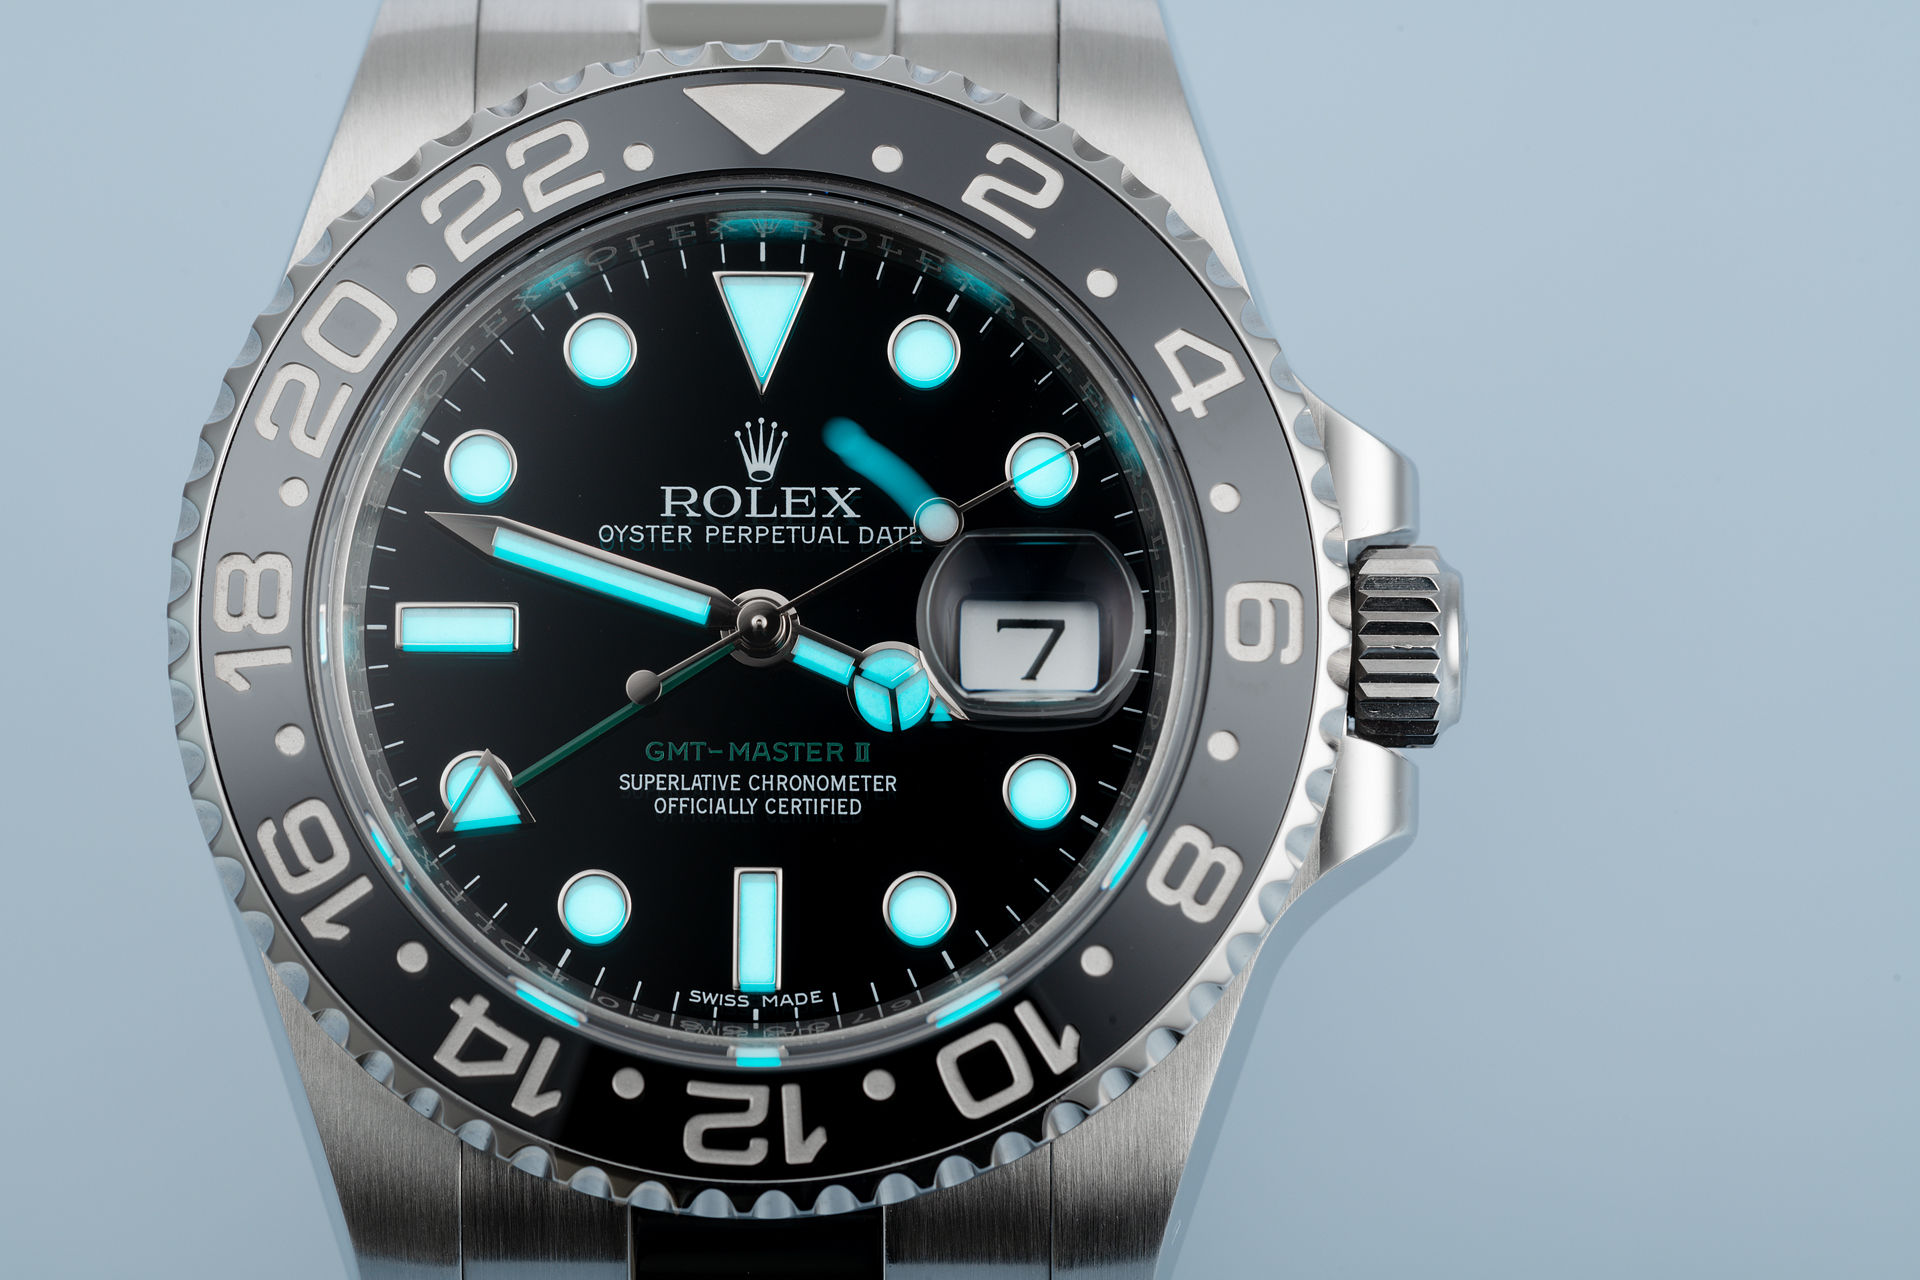 ref 116710LN | Box & Certificate | Rolex GMT-Master II